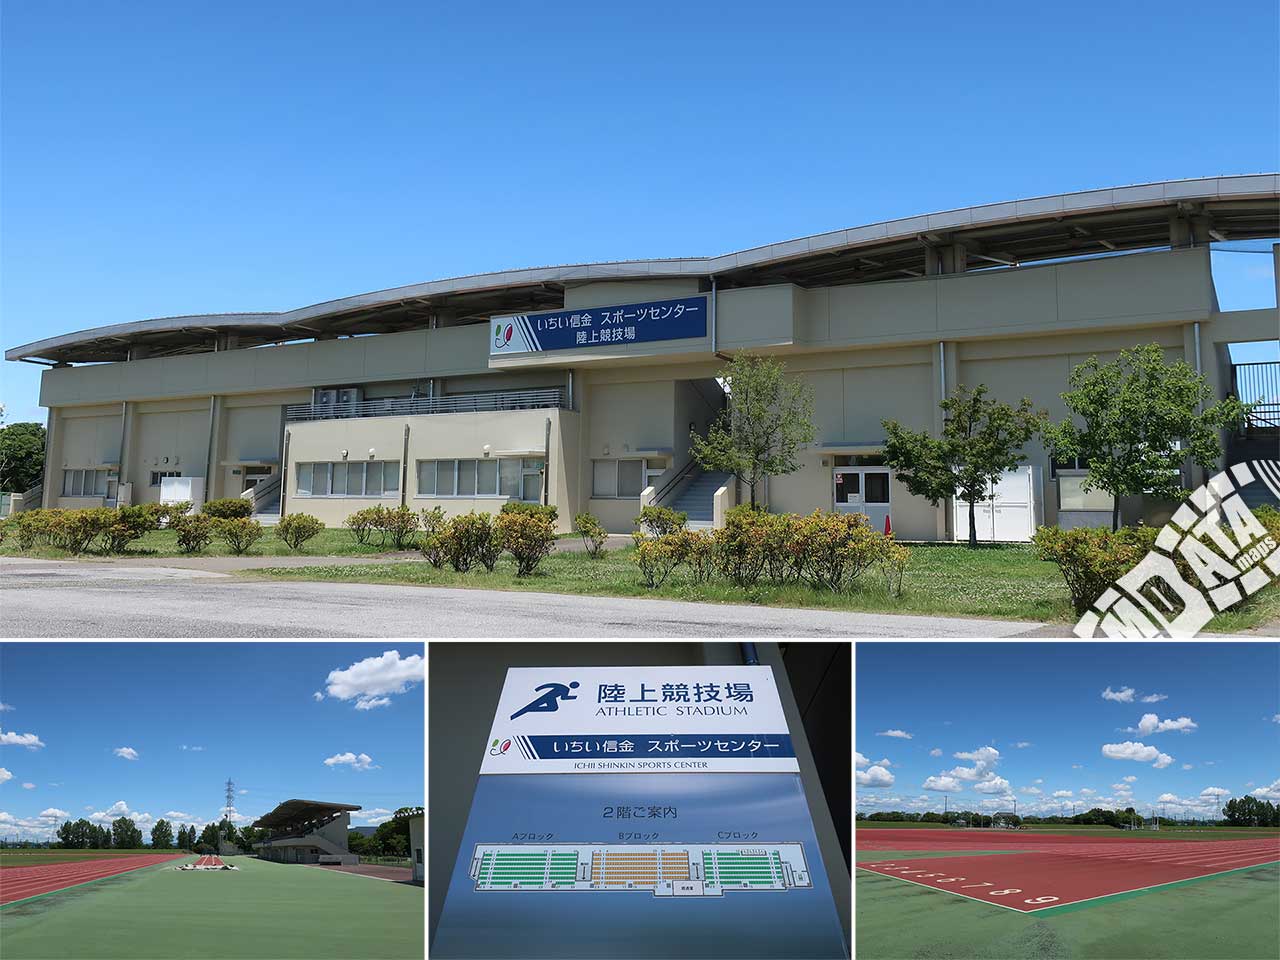 いちい信金スポーツセンター陸上競技場の写真 Photo taken on 2022/06/08